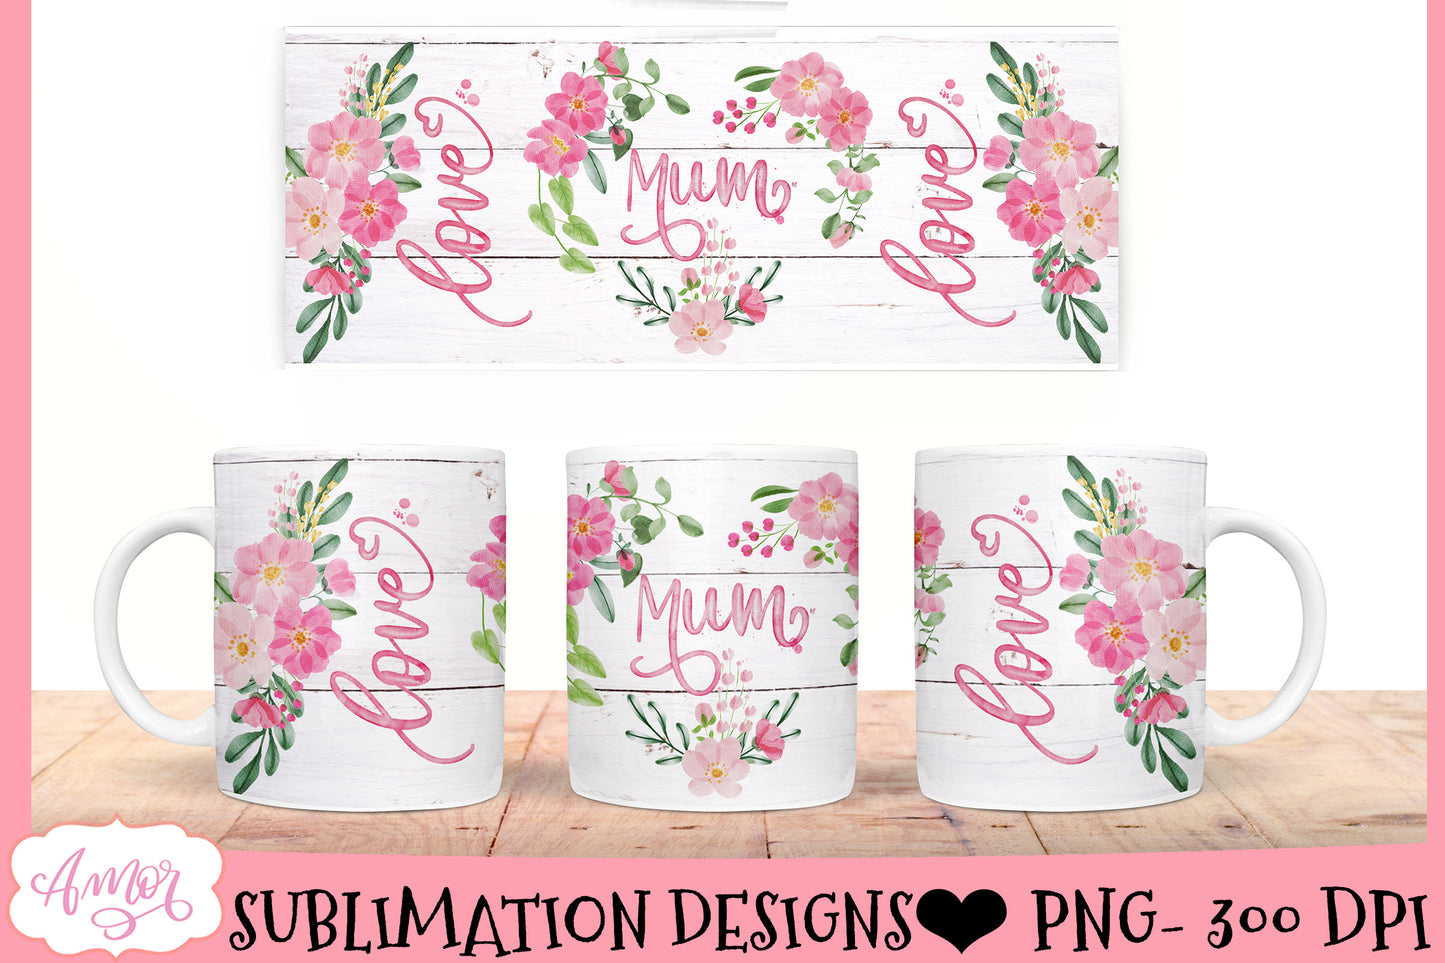 Mum Mug Wrap PNG BUNDLE